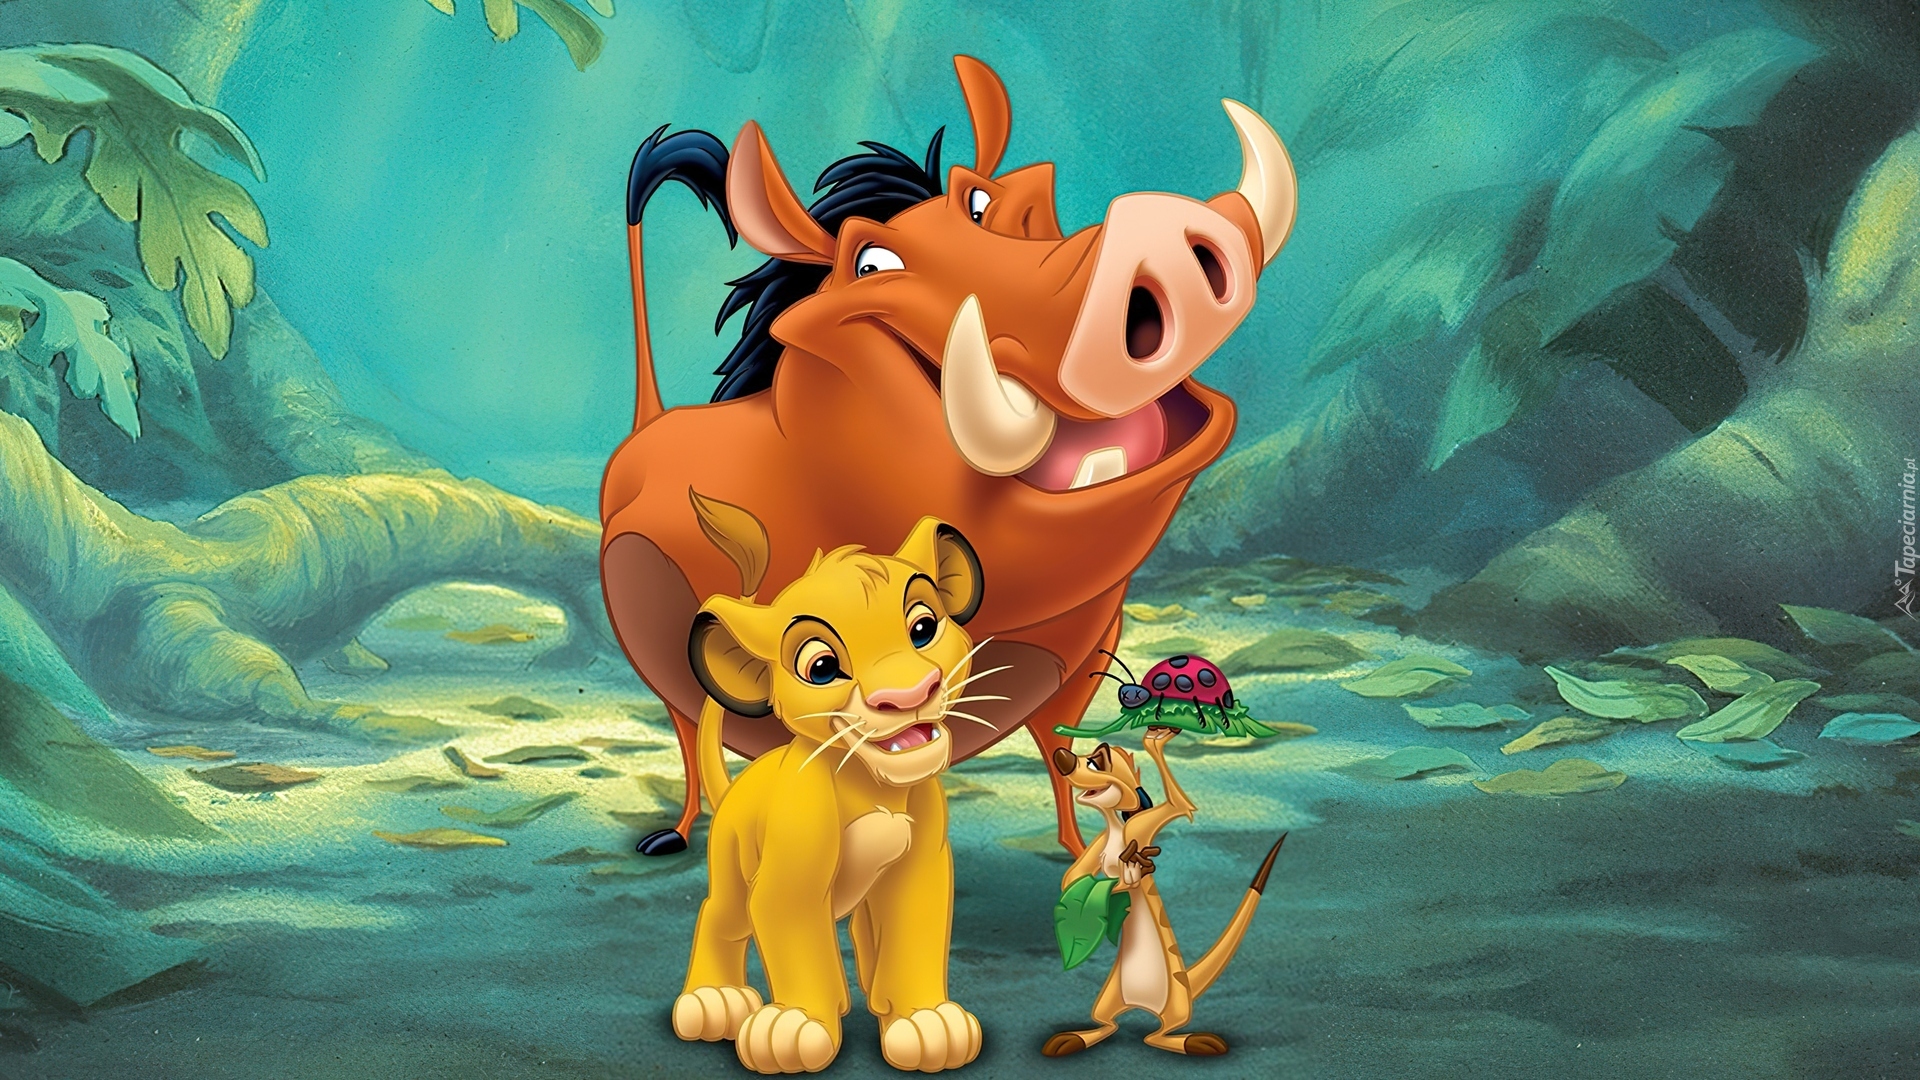 Król Lew, The Lion King, Simba, Pumba, Timon